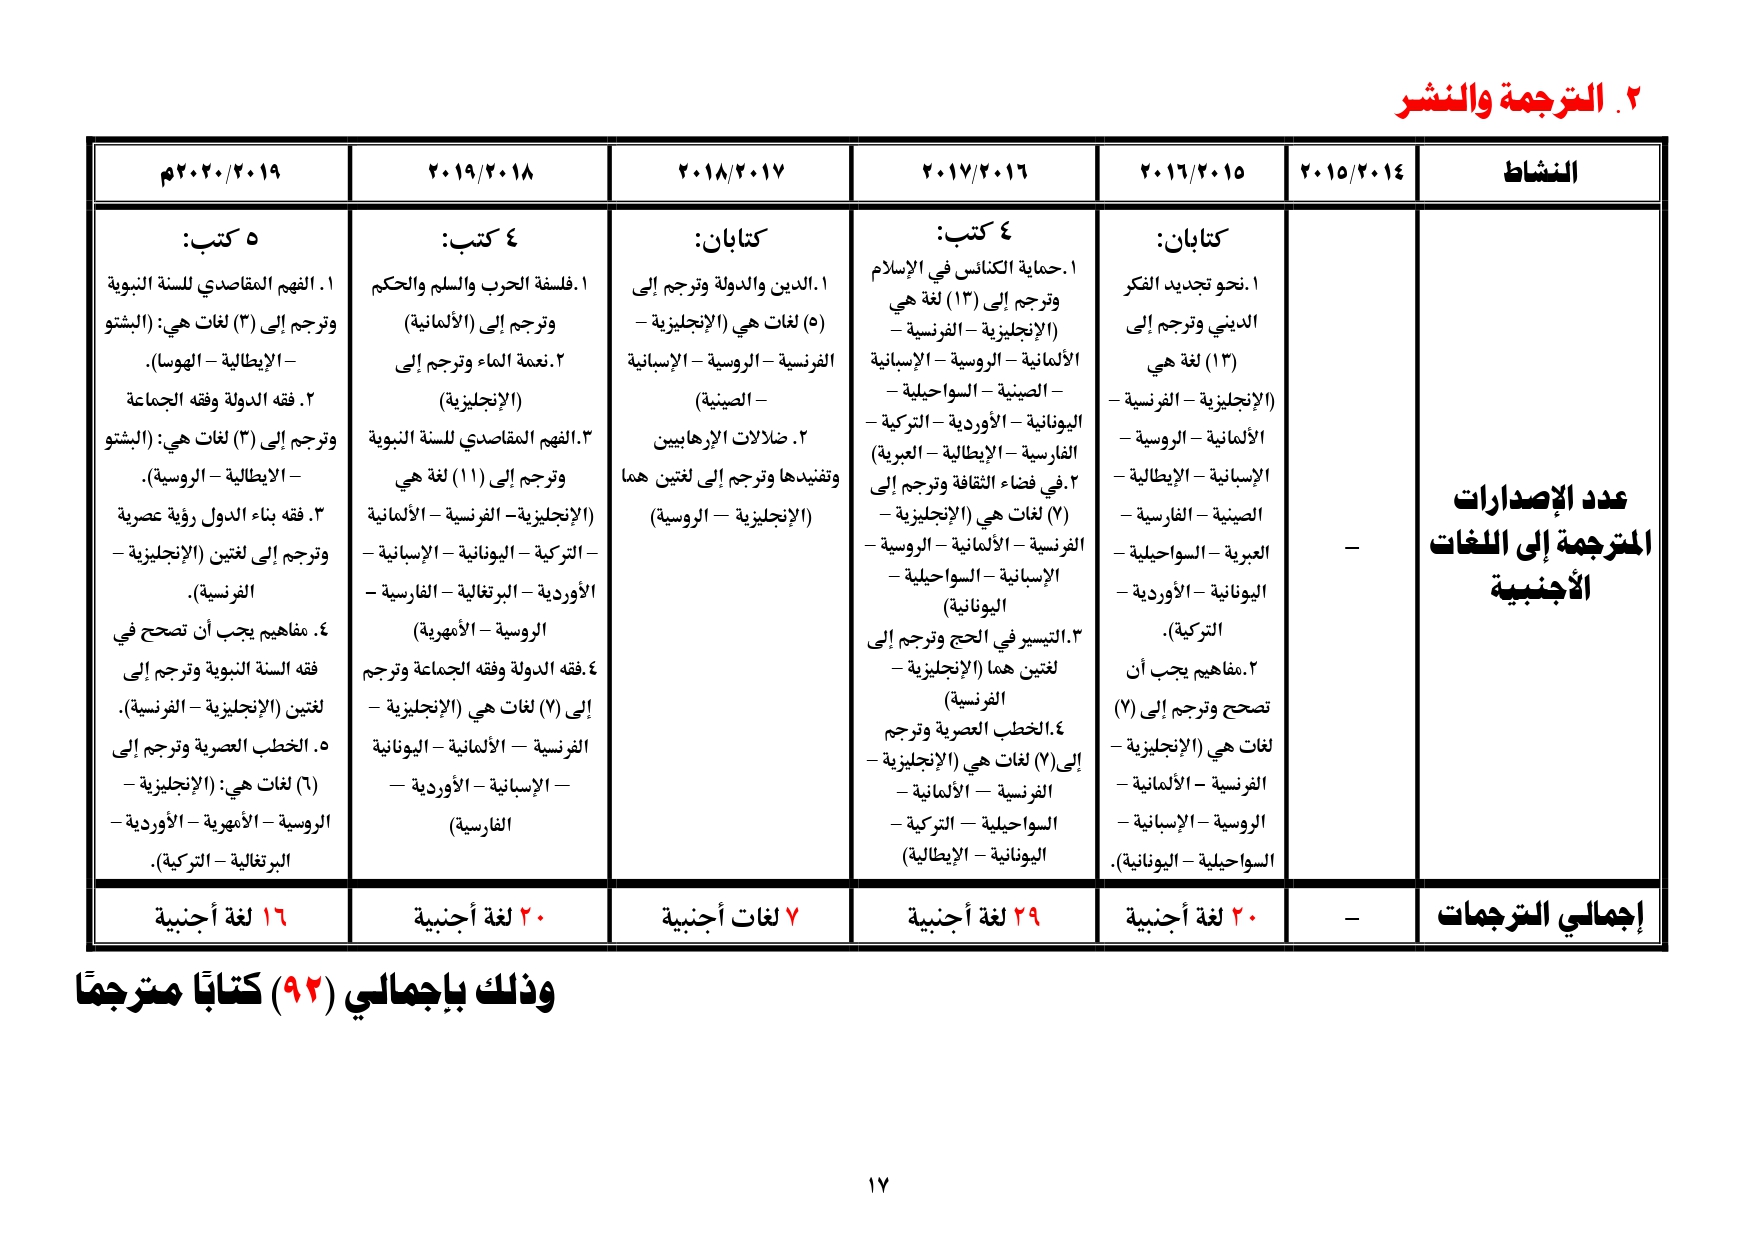 جدول يبين ما قدمته الوزارة من ترجمة ونشر للكتب العلمية